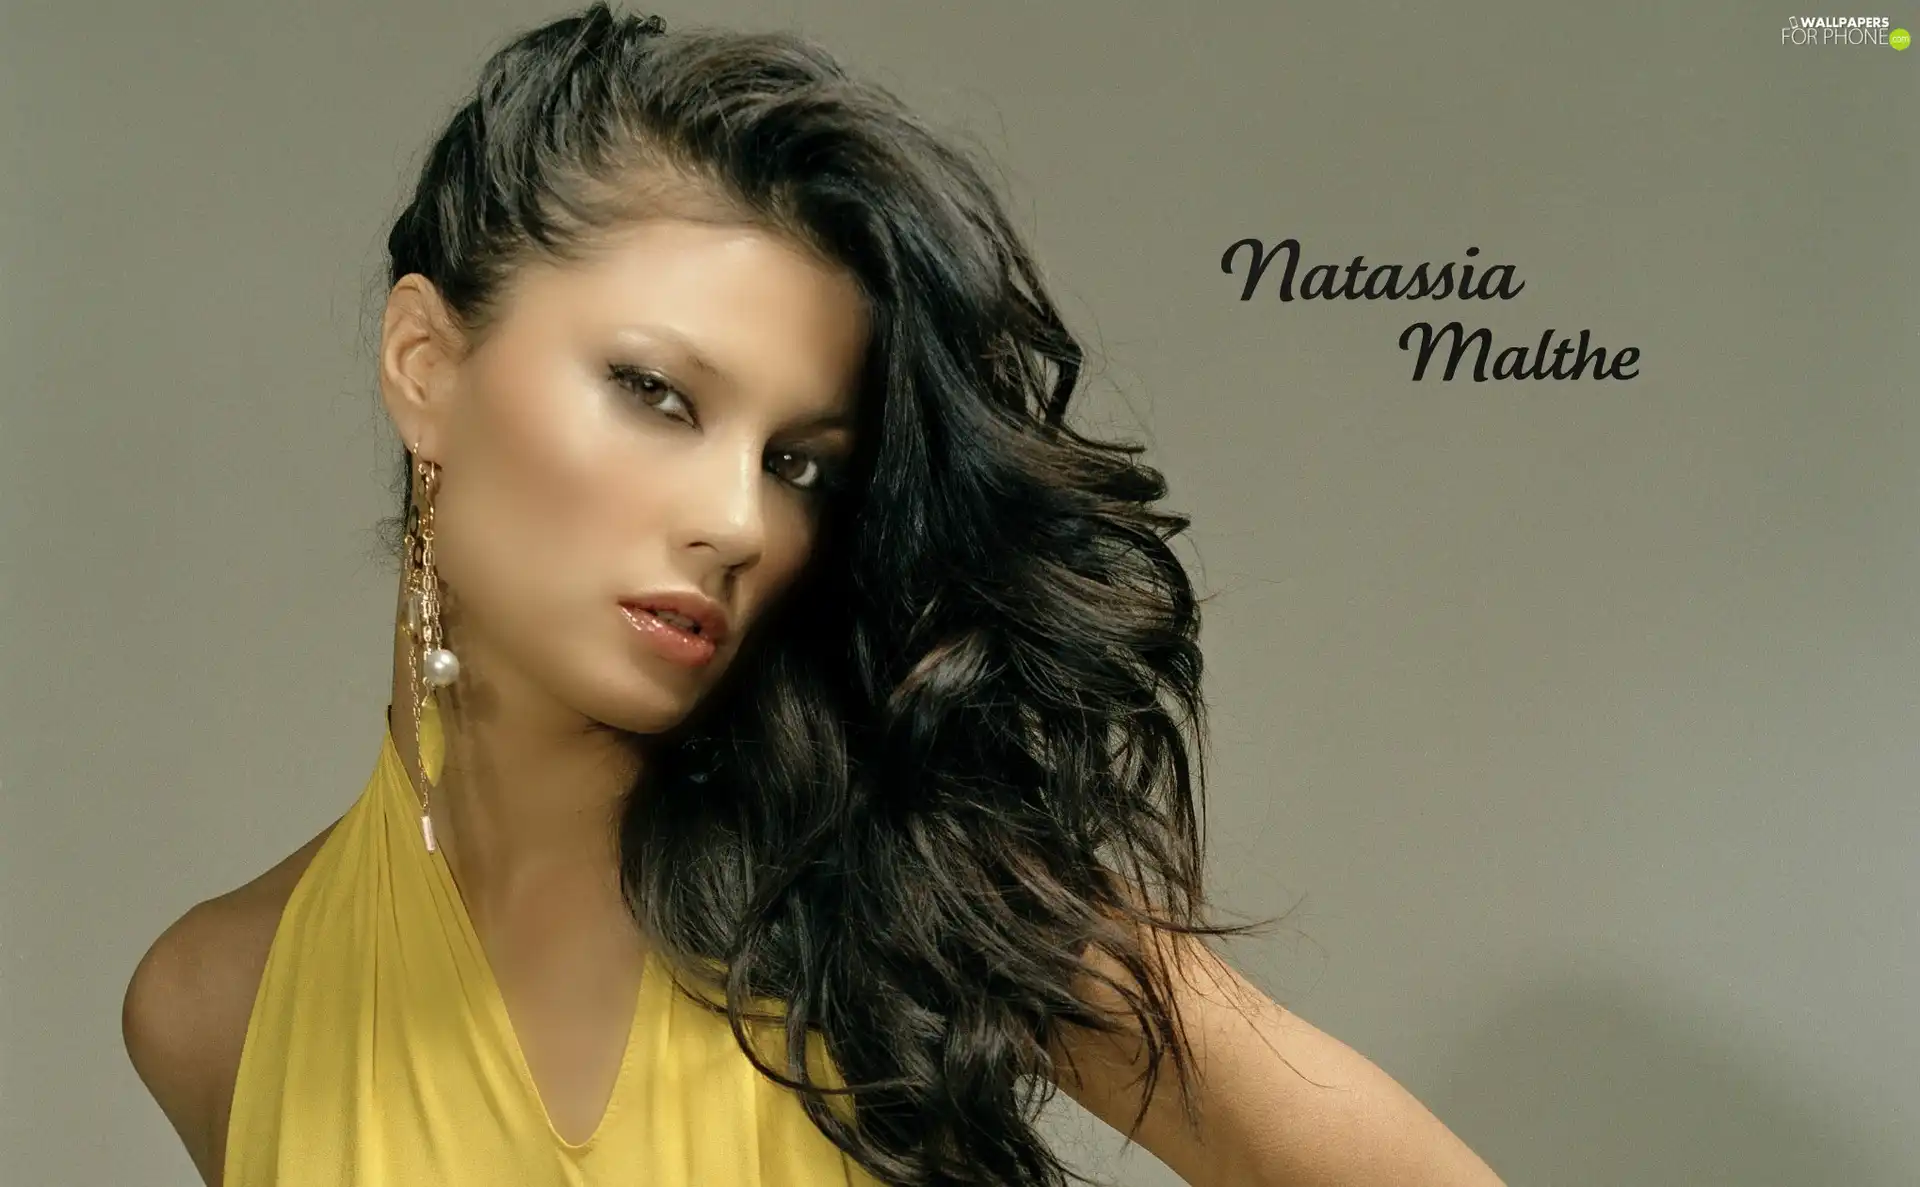 make-up, Natassia Malthe, ear-ring